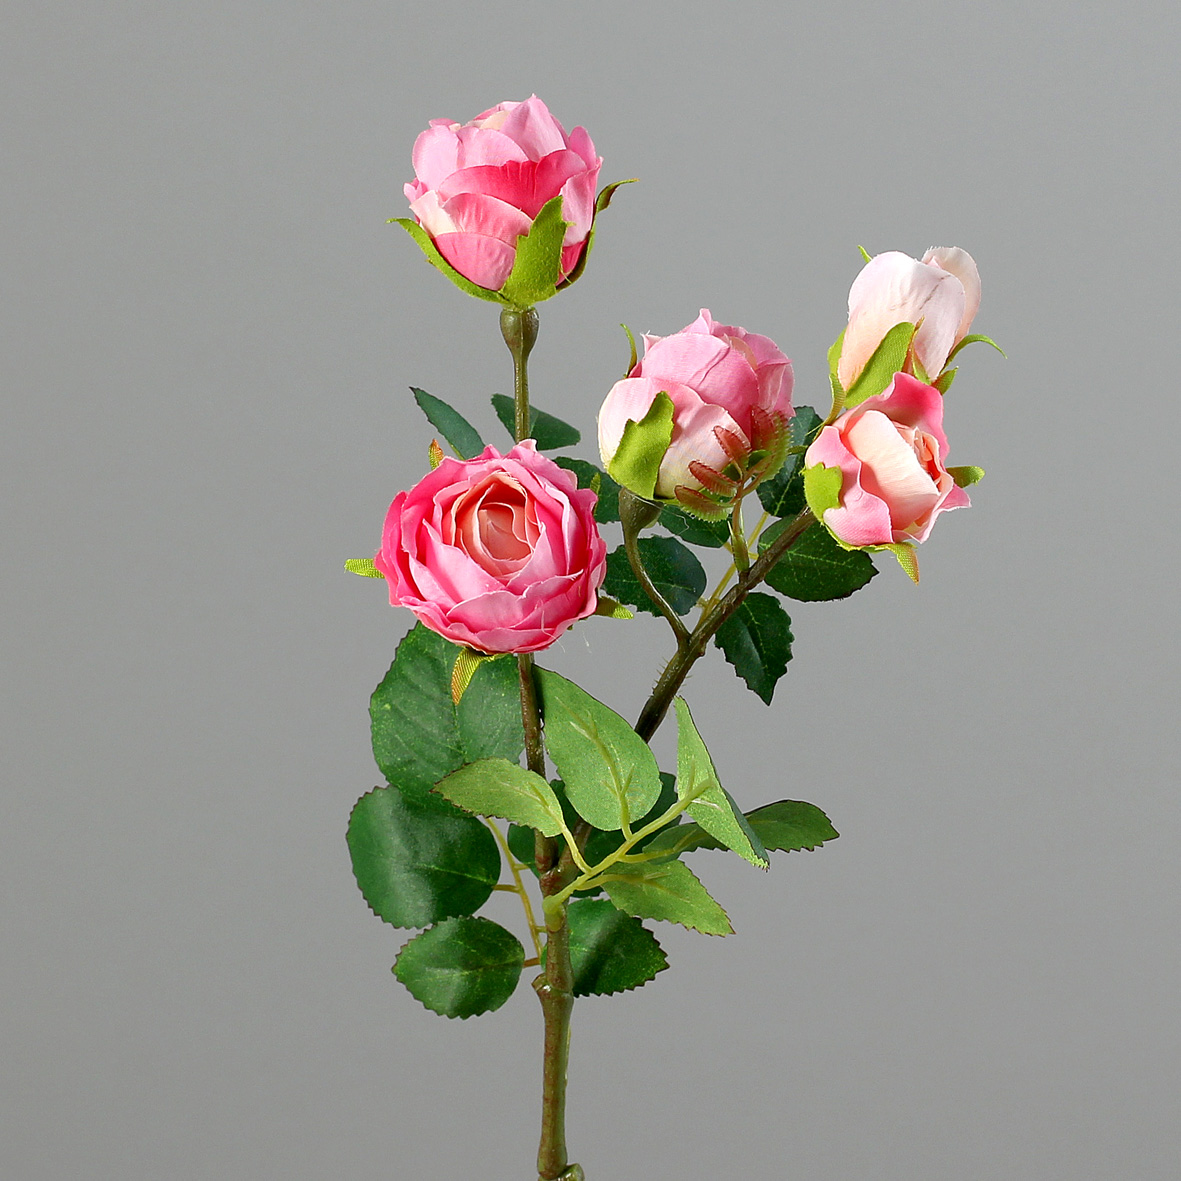 5 motive pentru a alege flori artificiale